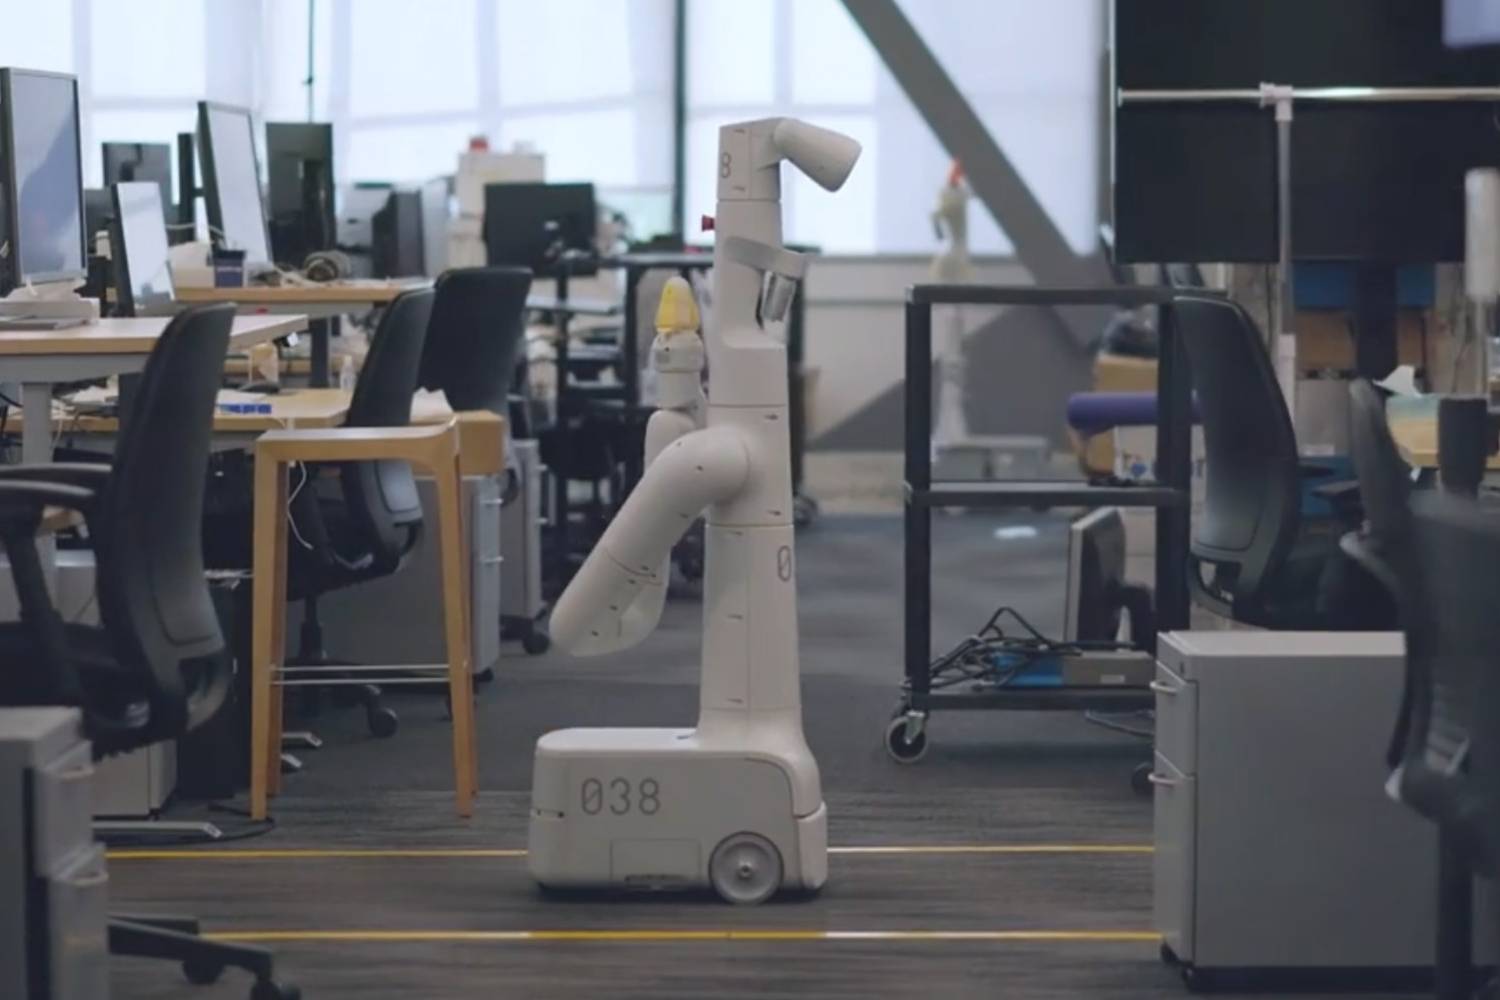 An Everyday Robot navigating through an office.